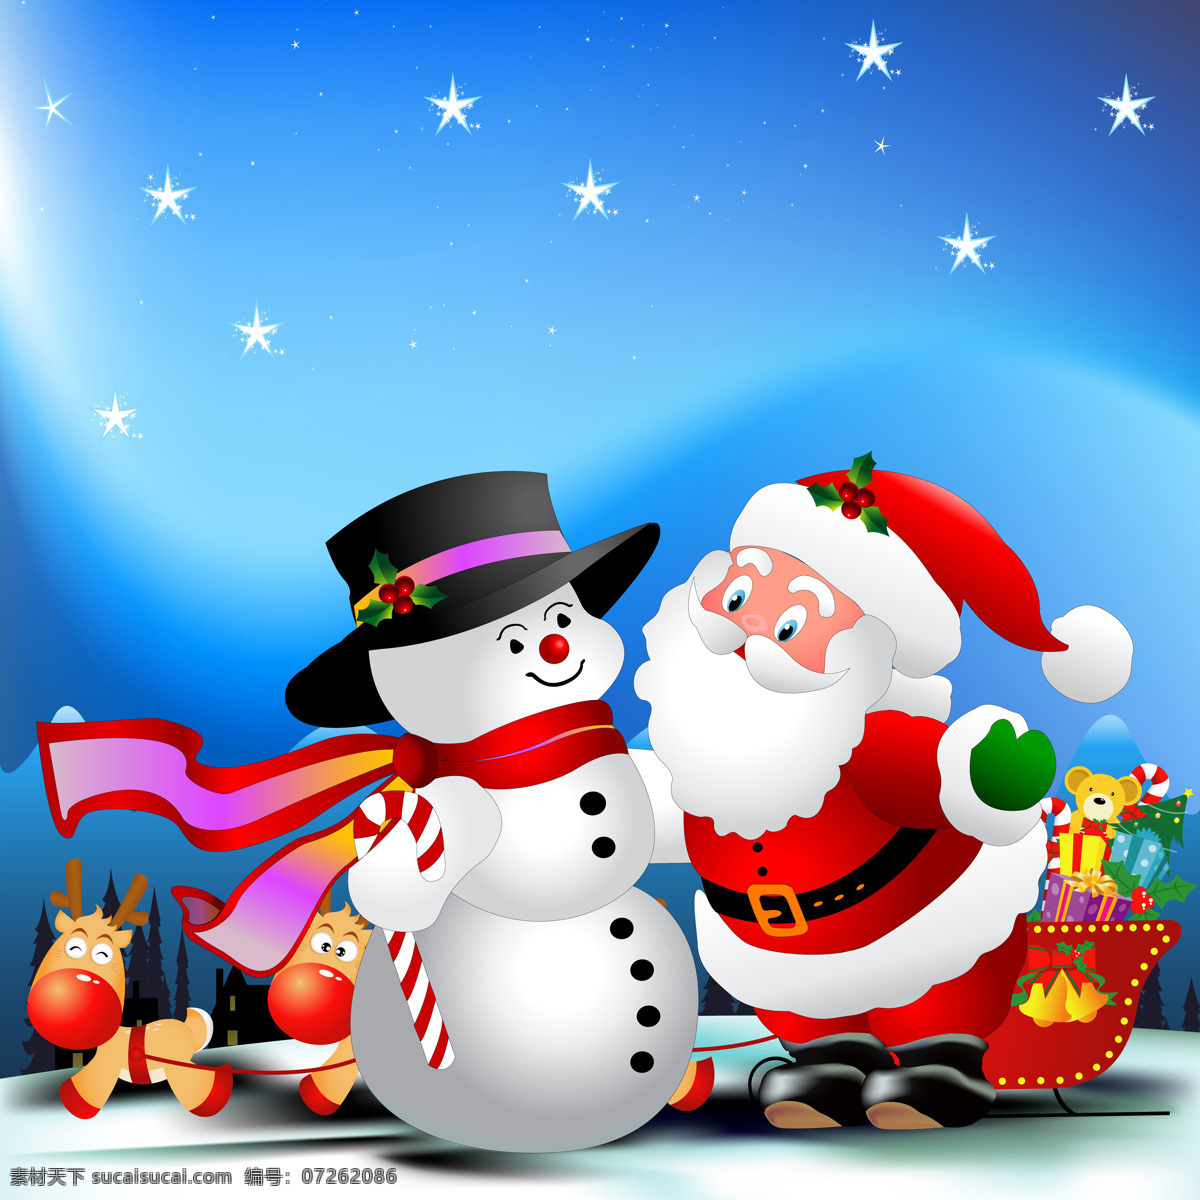 圣诞老人 雪人 圣诞插图 节日 圣诞节 背景 圣诞树木 礼物 雪橇车 麋鹿 圣诞装饰 圣诞素材 节日素材 节日庆典 生活百科